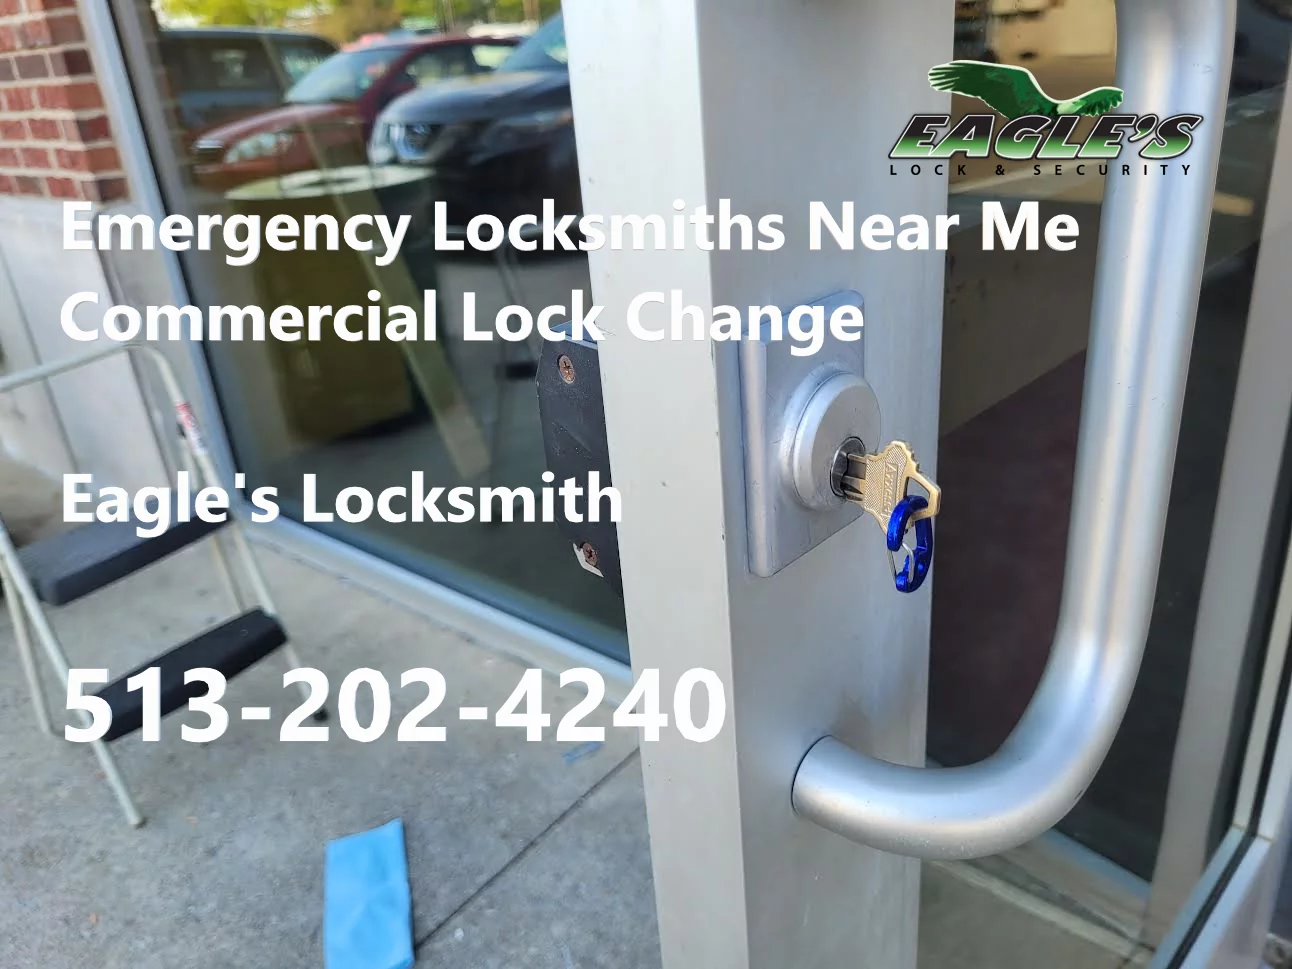 Emergency Locksmiths Near Me - Eagle's Locksmith Cincinnati